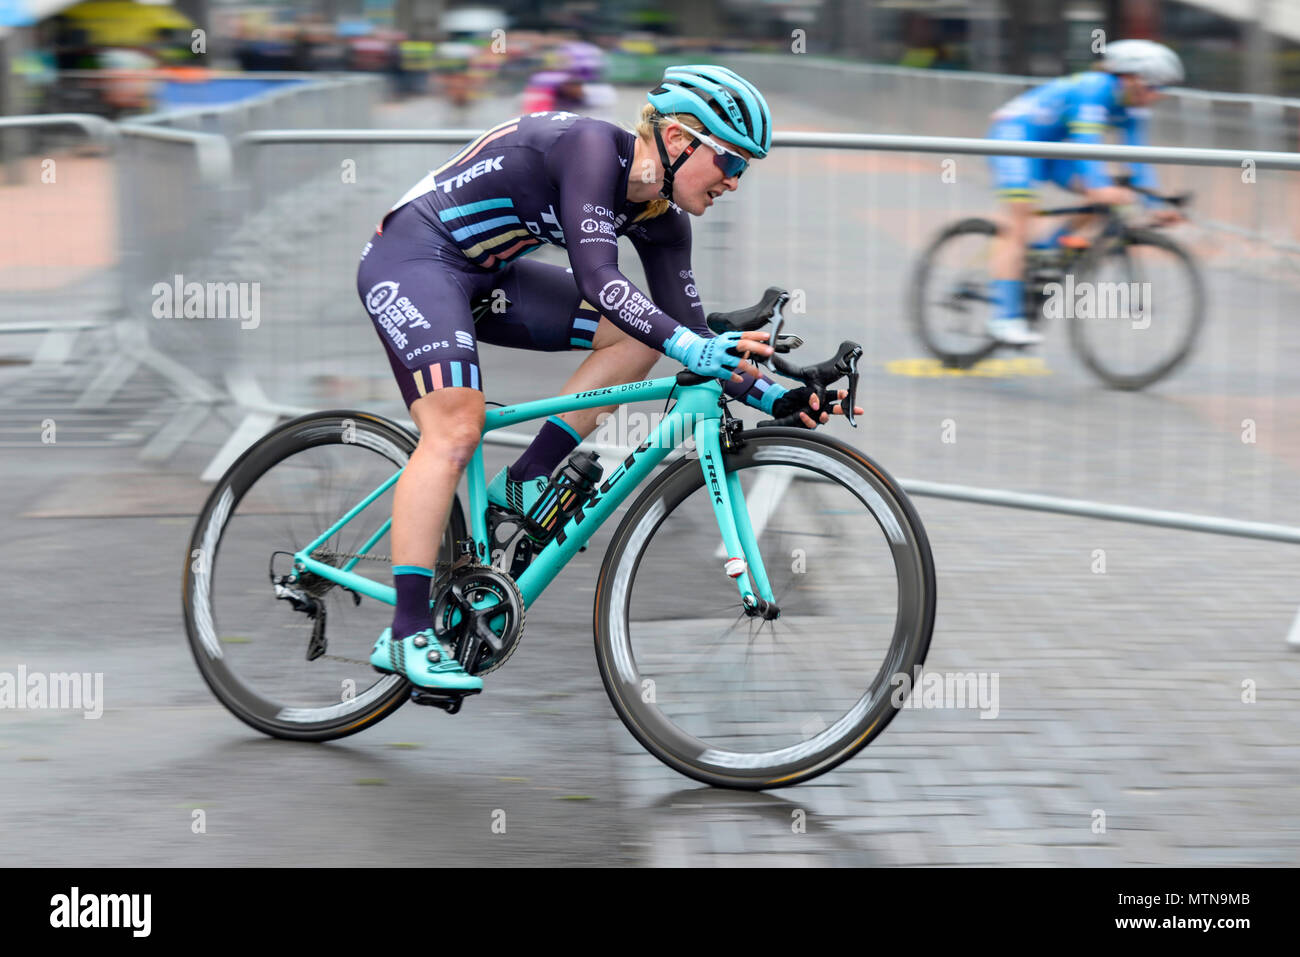 Lucy Shaw von Trek lässt das Rennen beim Elite-Radrennen der OVO Energy Tour Series 2018 in Wembley, London, UK, fallen. Runde 7 Radrennen Stockfoto